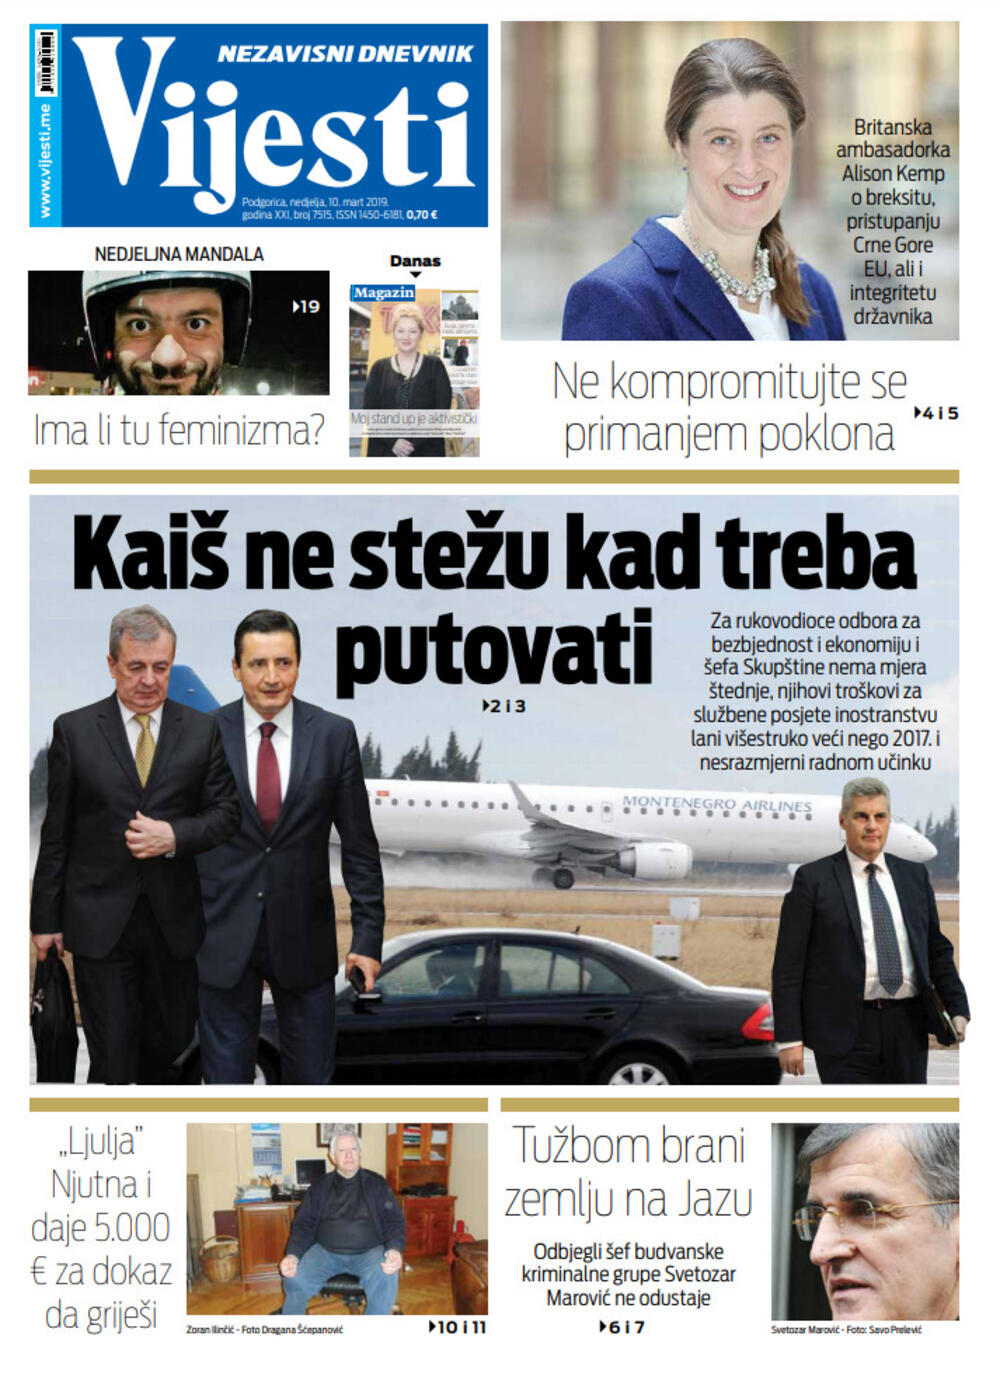 Naslovna strana "Vijesti" za 10. mart, Foto: Vijesti